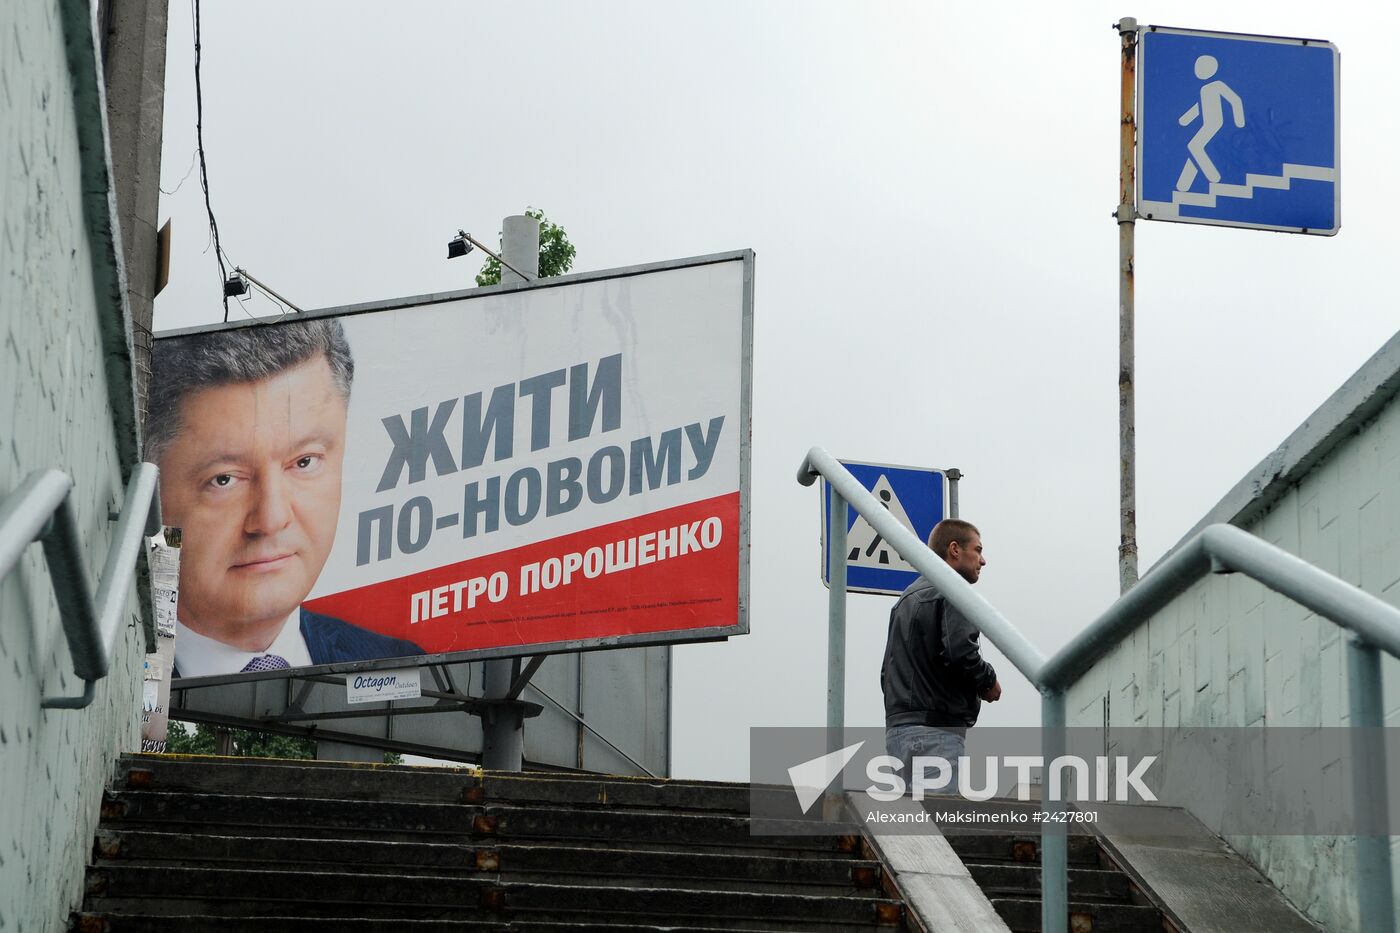 Electoral campaign in Kiev